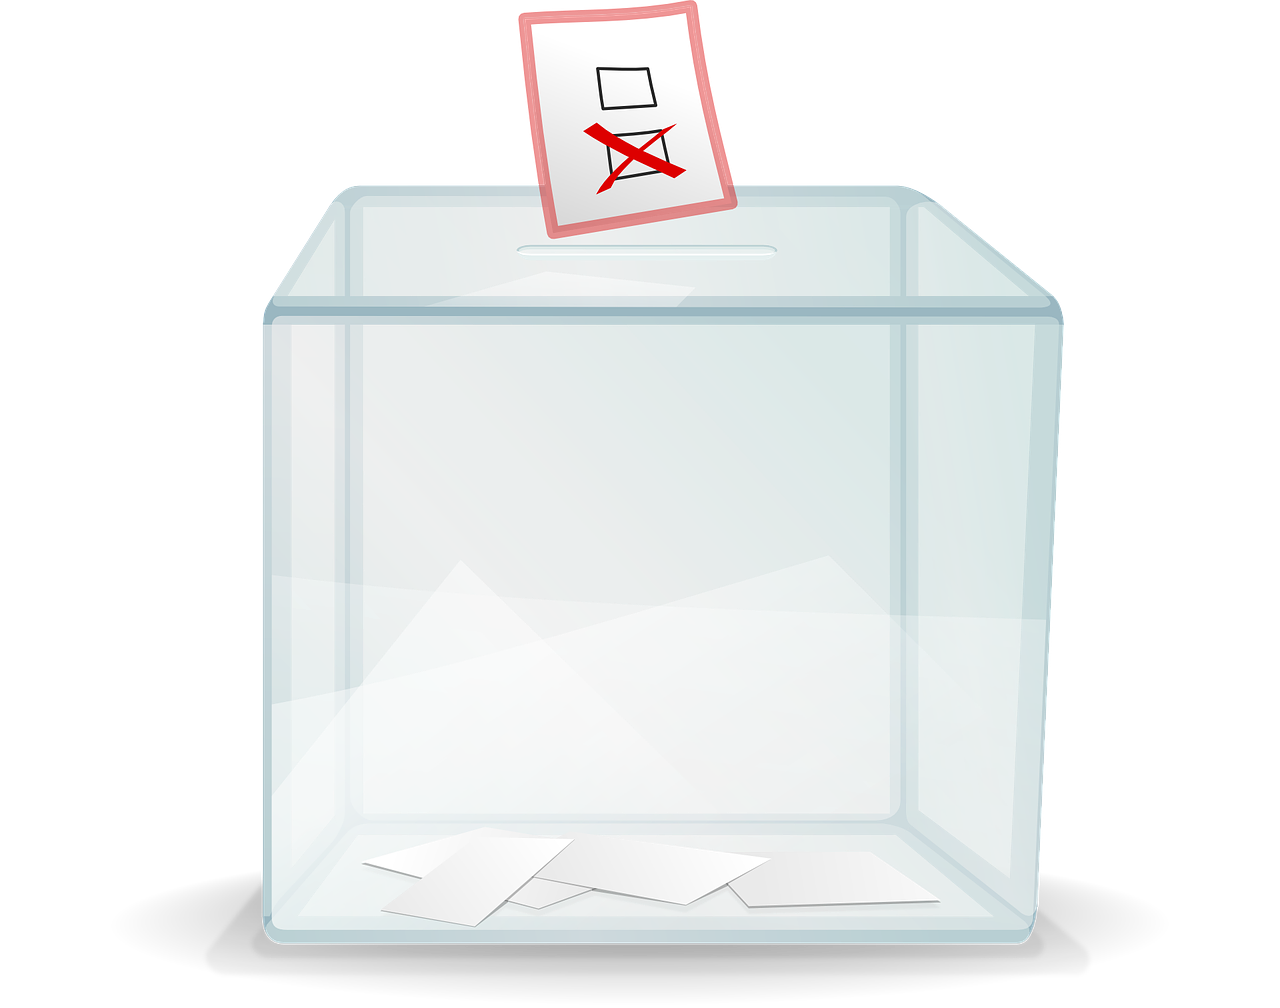 Grafika przedstawia urnę wyborczą